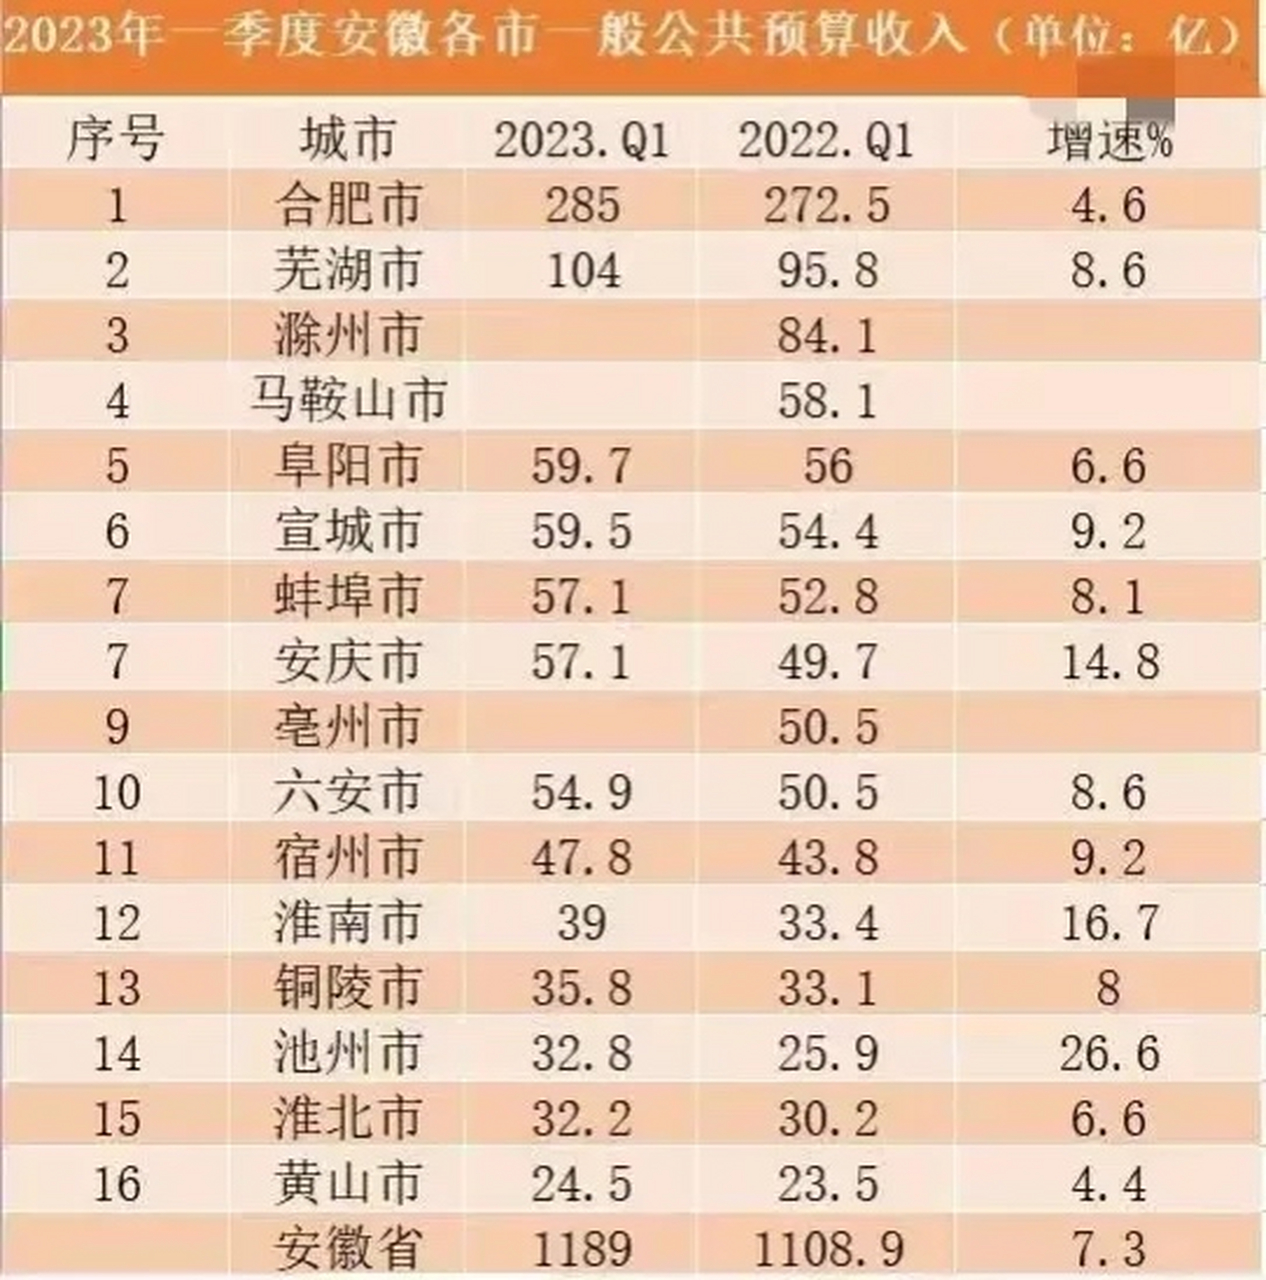 一季度安徽省各市财政收入:芜湖市突破百亿,稳居第2,宣城领先蚌埠和